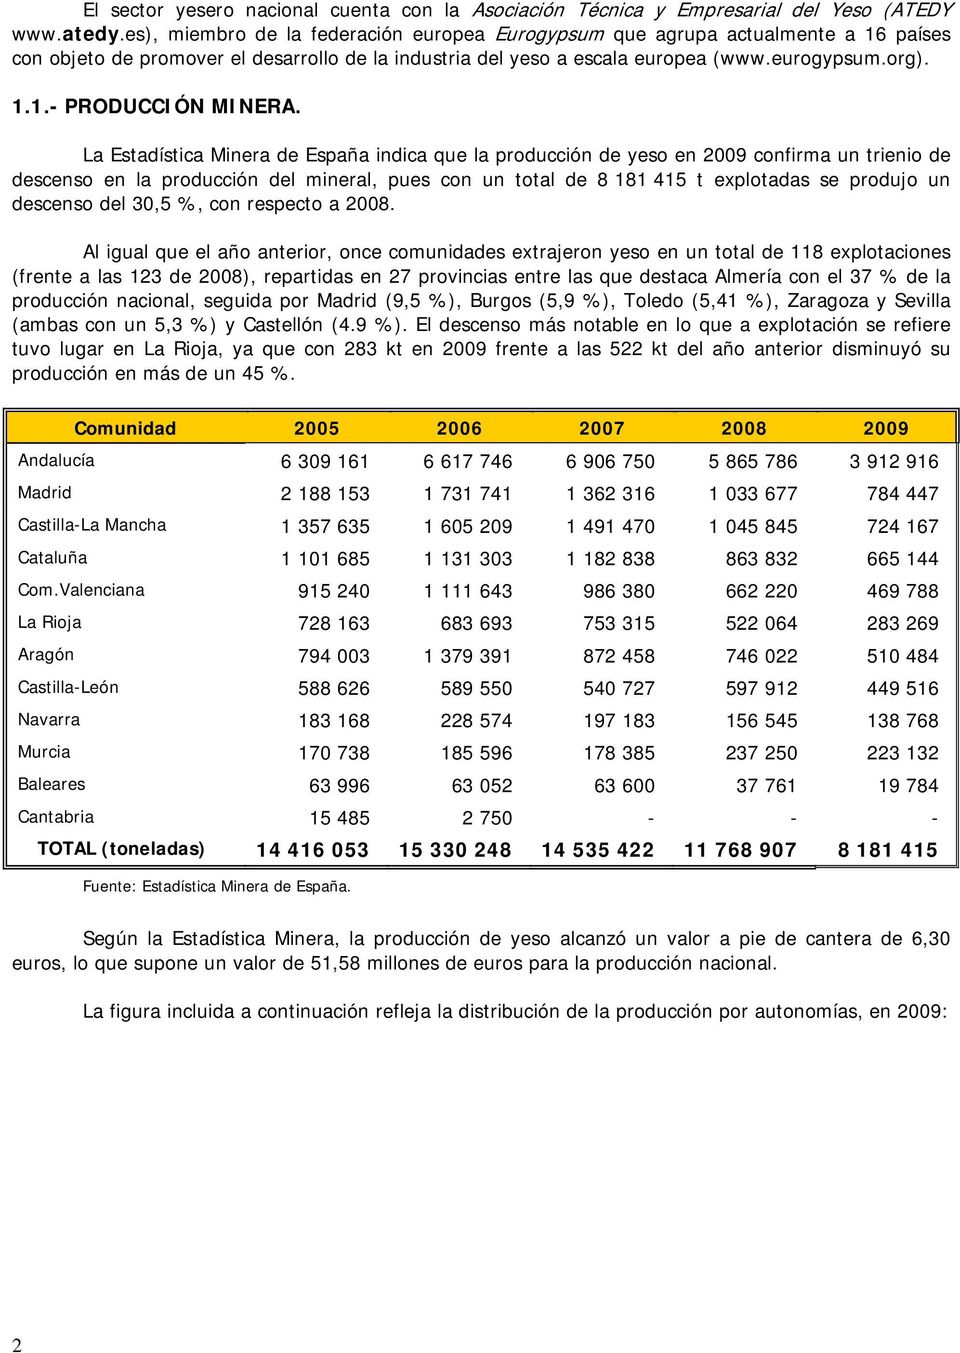 La Estadística Minera de España indica que la producción de yeso en 2009 confirma un trienio de descenso en la producción del mineral, pues con un total de 8 181 415 t explotadas se produjo un